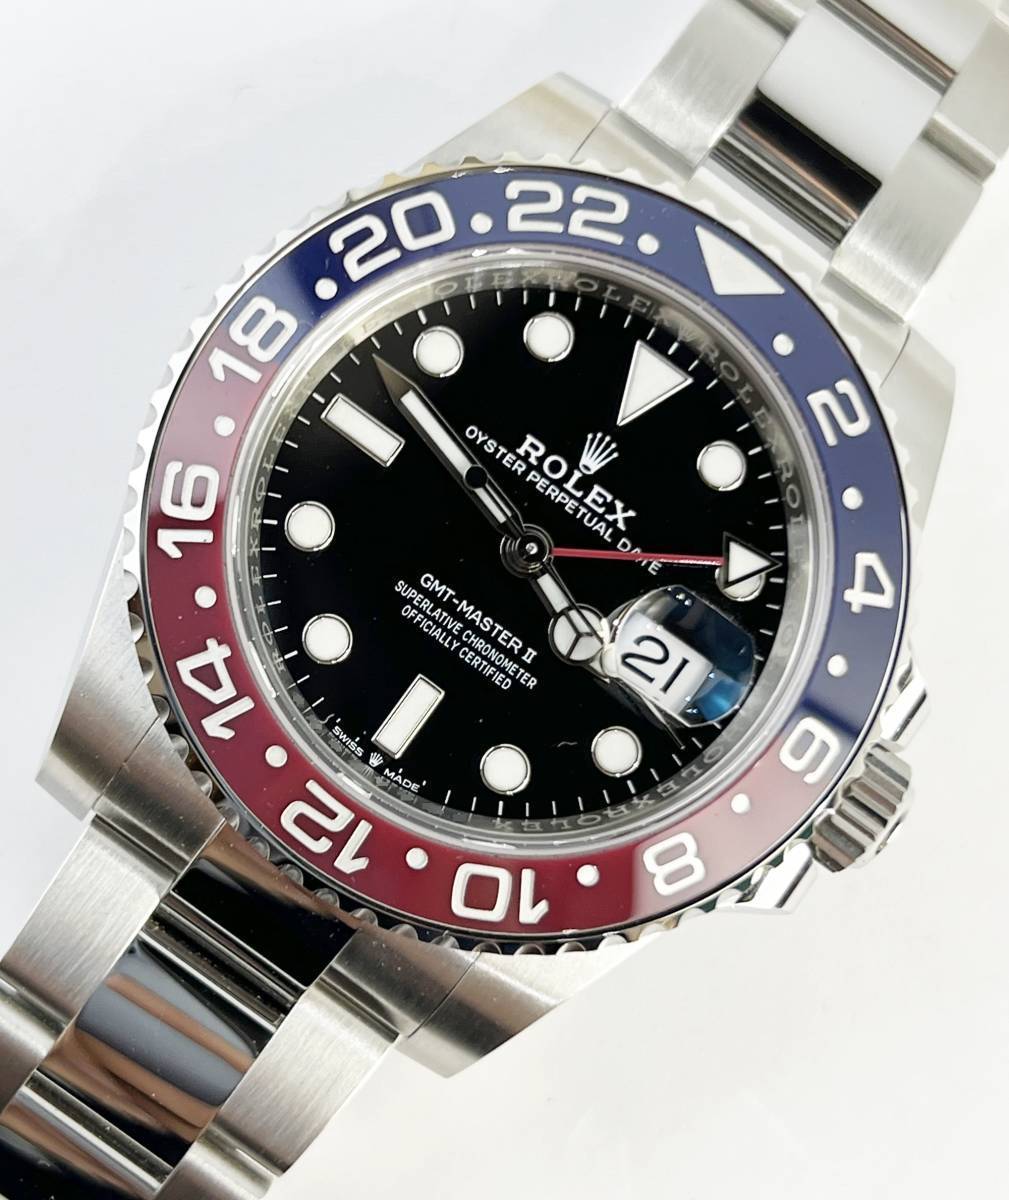 未使用美品 ロレックス ROLEX GMTマスター2 126710BLRO オイスターブレス 腕時計 メンズ  青赤 ペプシ 2021年購入 ランダム 自動巻きの画像1